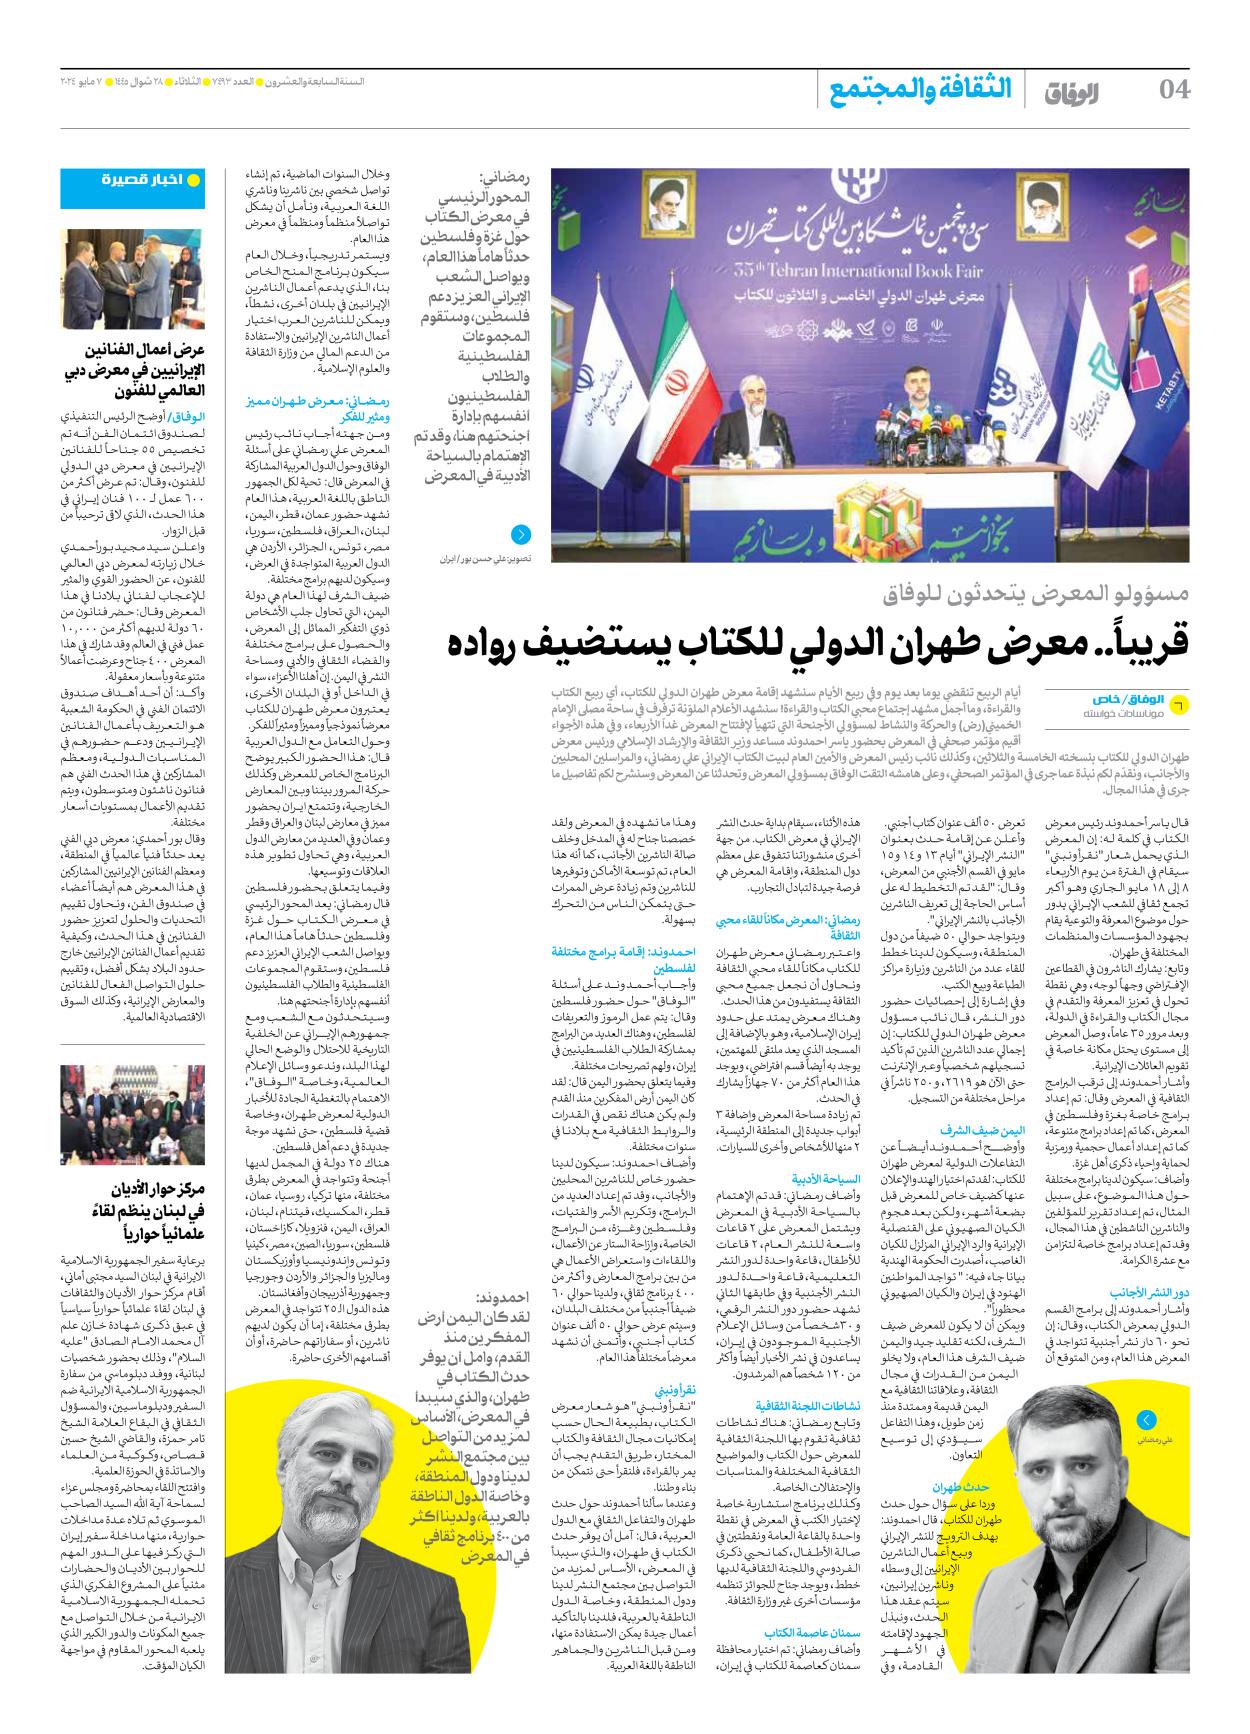 صحیفة ایران الدولیة الوفاق - العدد سبعة آلاف وأربعمائة وثلاثة وتسعون - ٠٧ مايو ٢٠٢٤ - الصفحة ٤